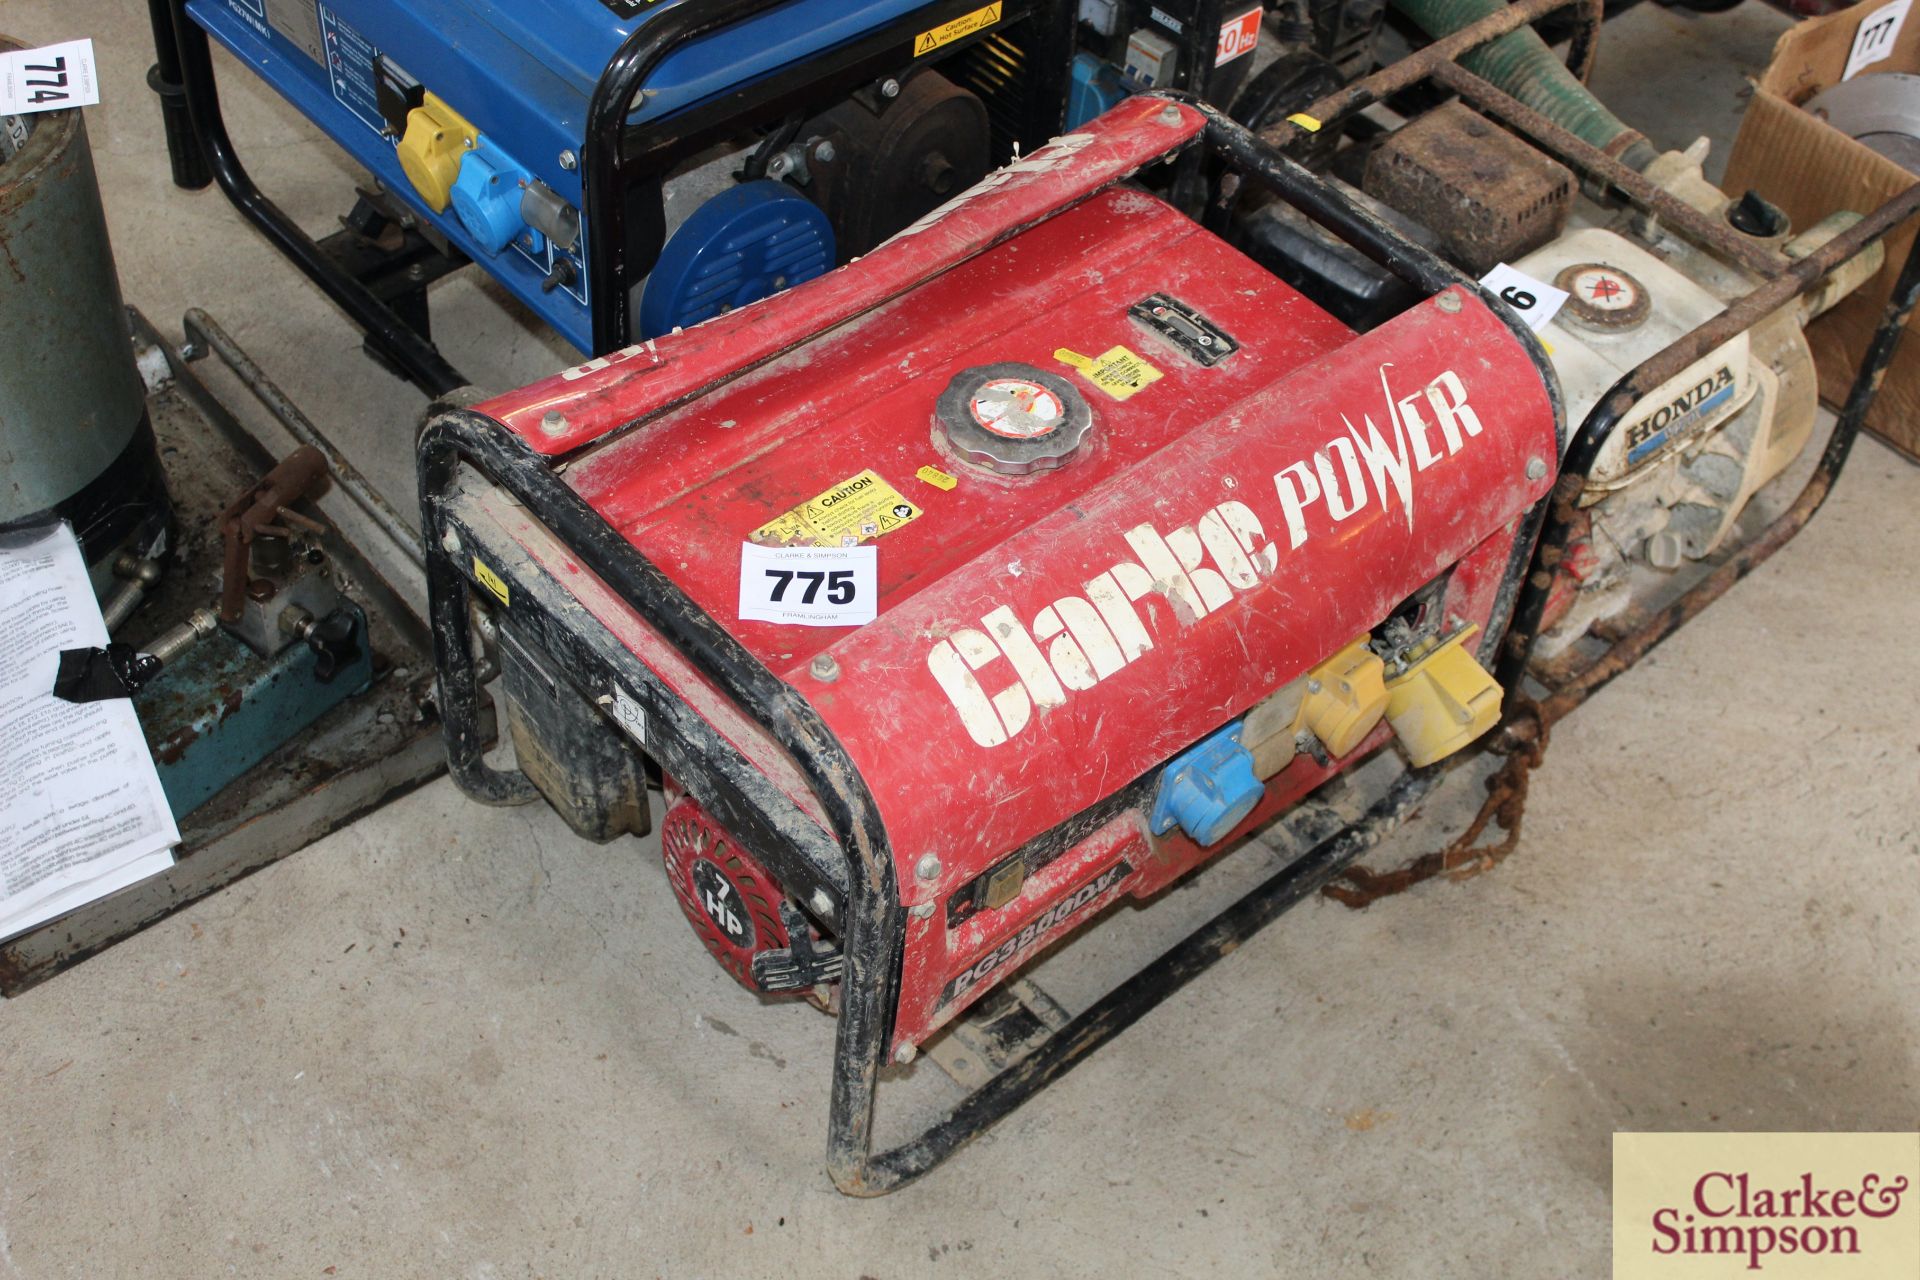 240V generator. Spares or repair.